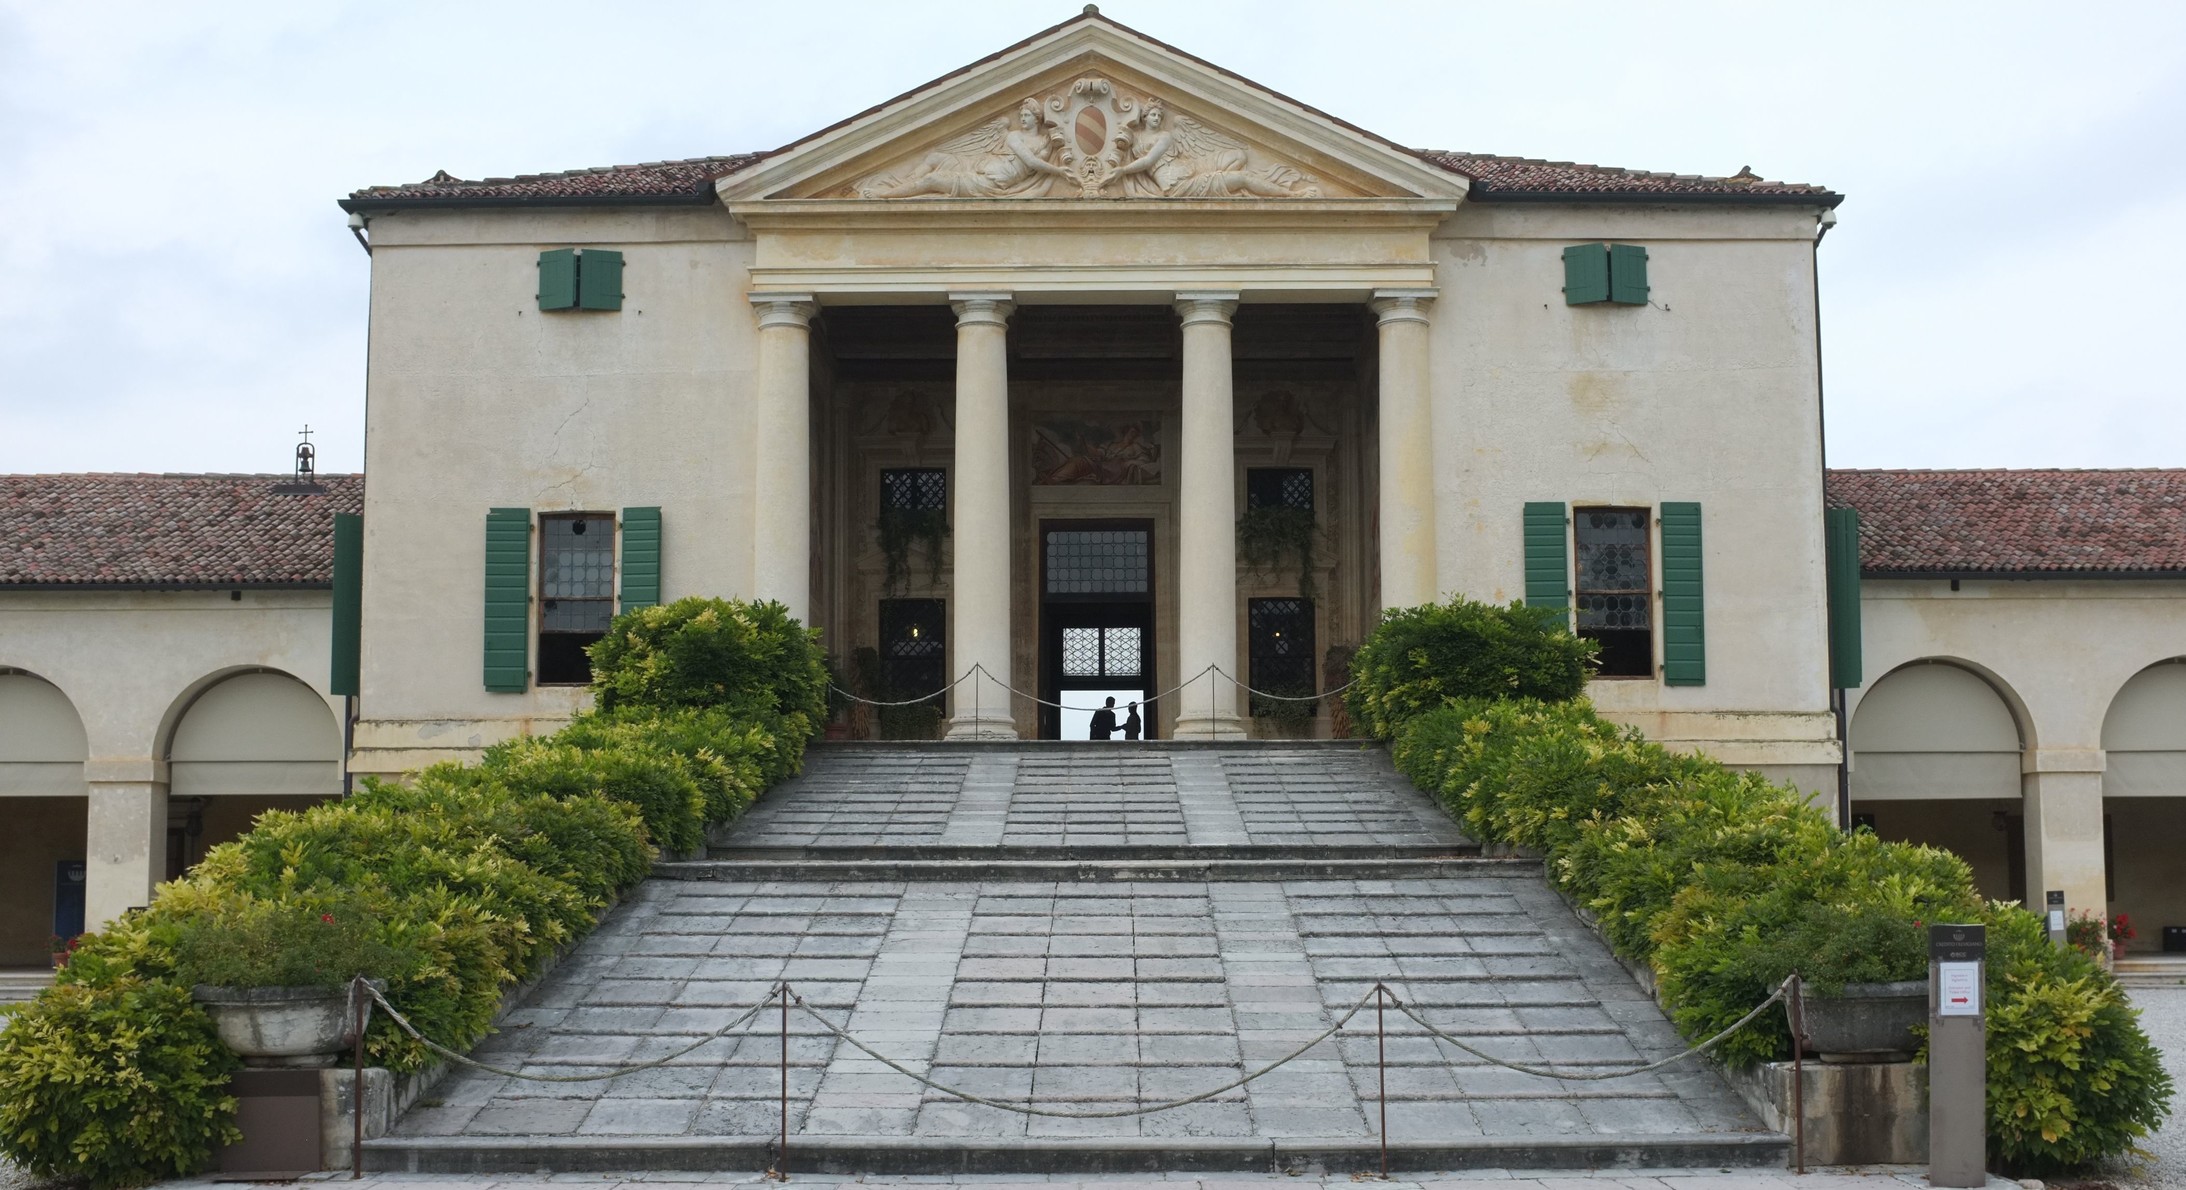 Villa Emo in Fanzolo die Vedelago, gebaut von Andrea Palladio, vor 1556 (Foto: Journal 21)